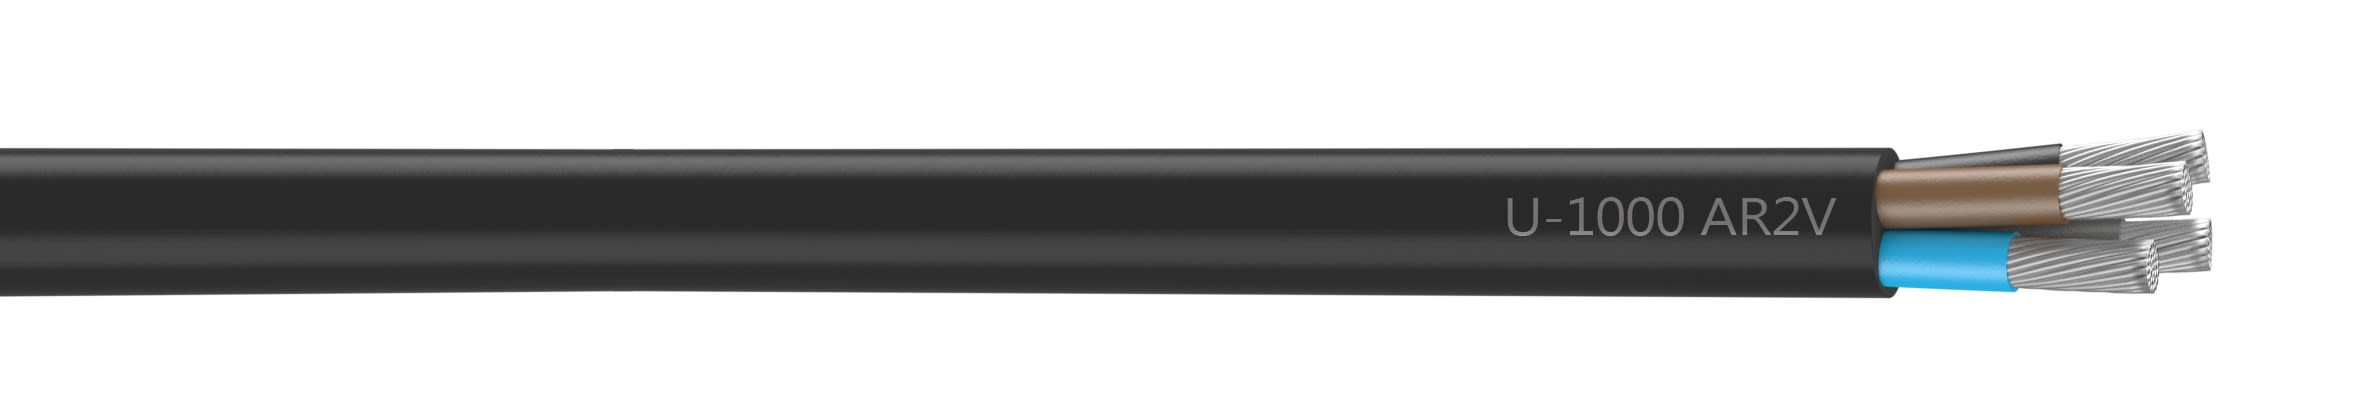 Nexans - Câble rigide U-1000 AR2V aluminium 4x120 longueur à la coupe